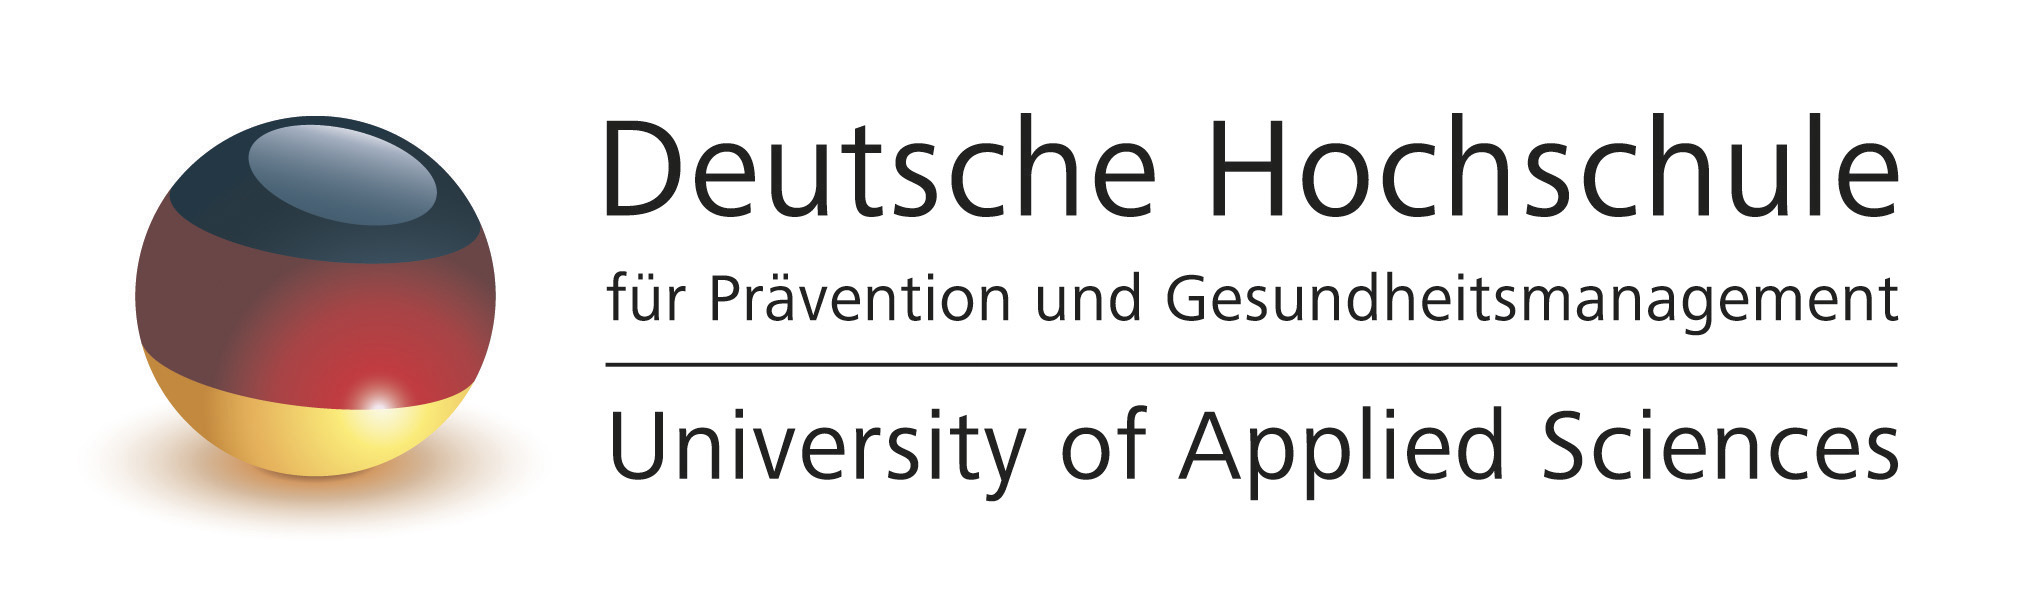 Deutsche Hochschule für Prävention und Gesundheitsmanagement